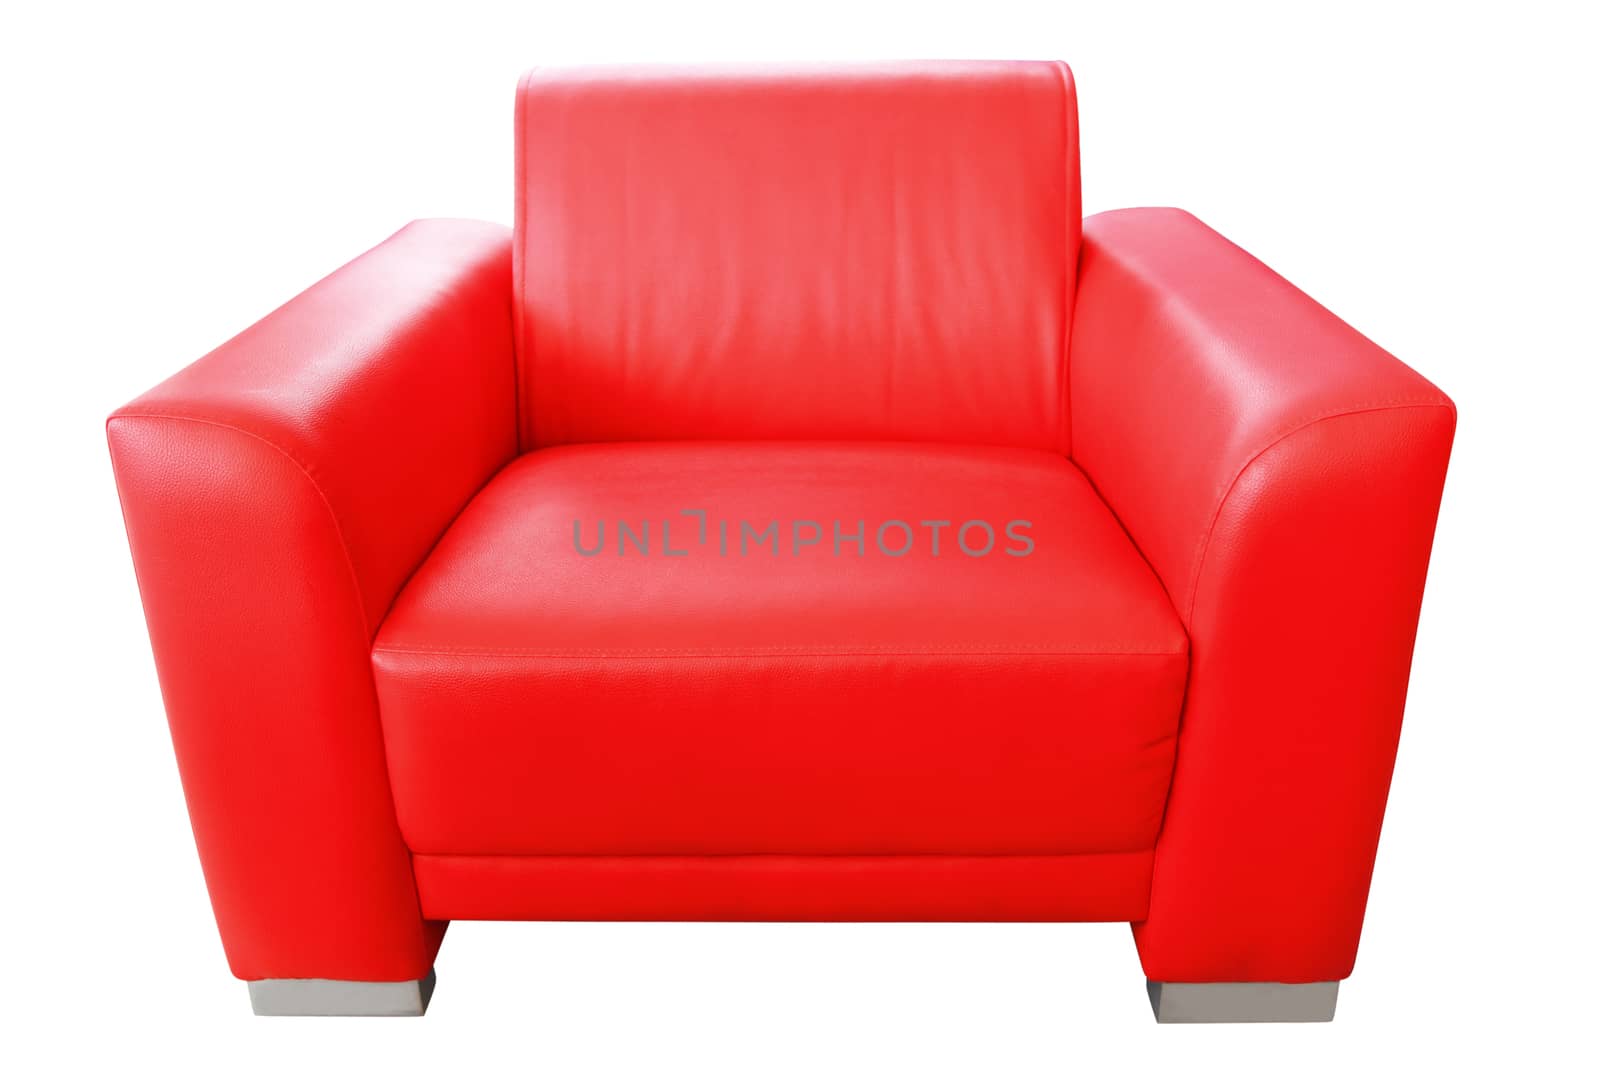 Red seat by narinbg